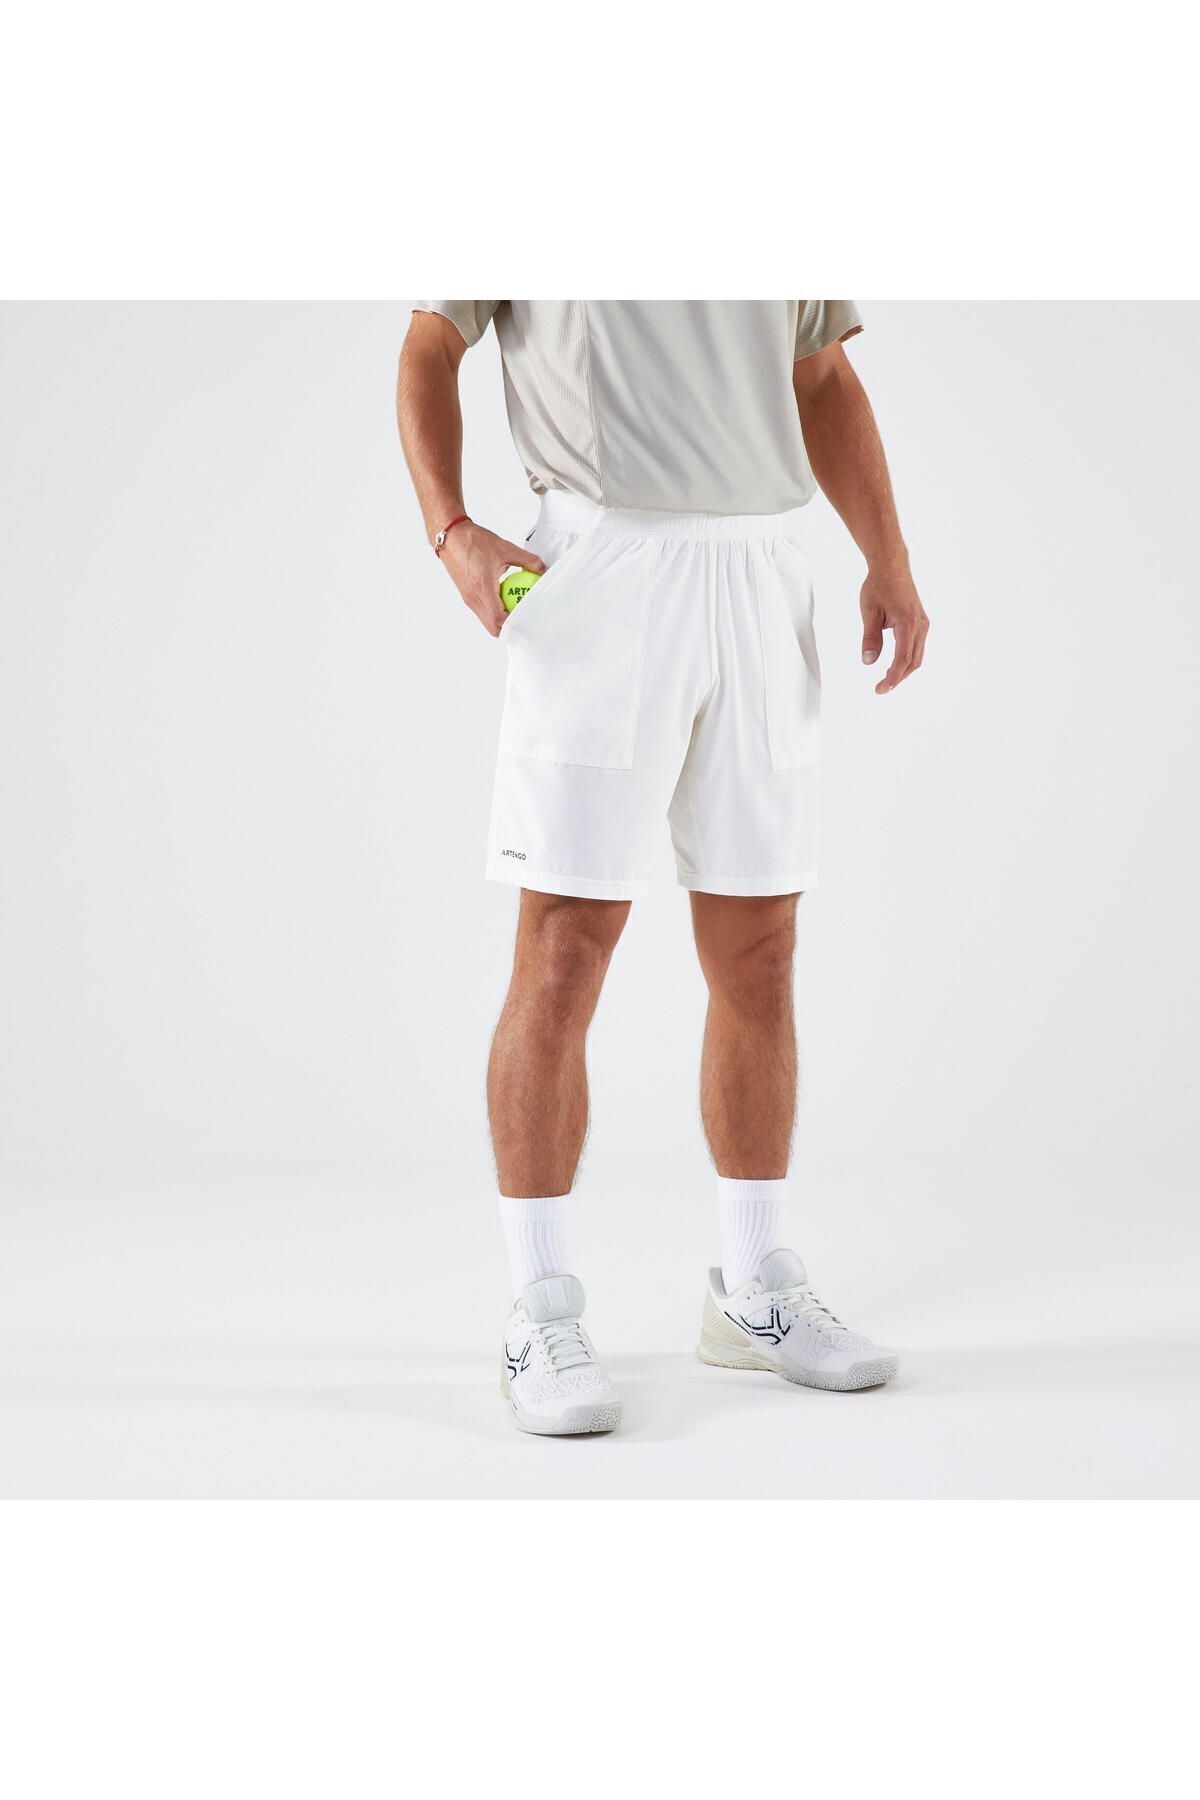 Decathlon Erkek Tenis Şortu - Beyaz - Artengo Dry